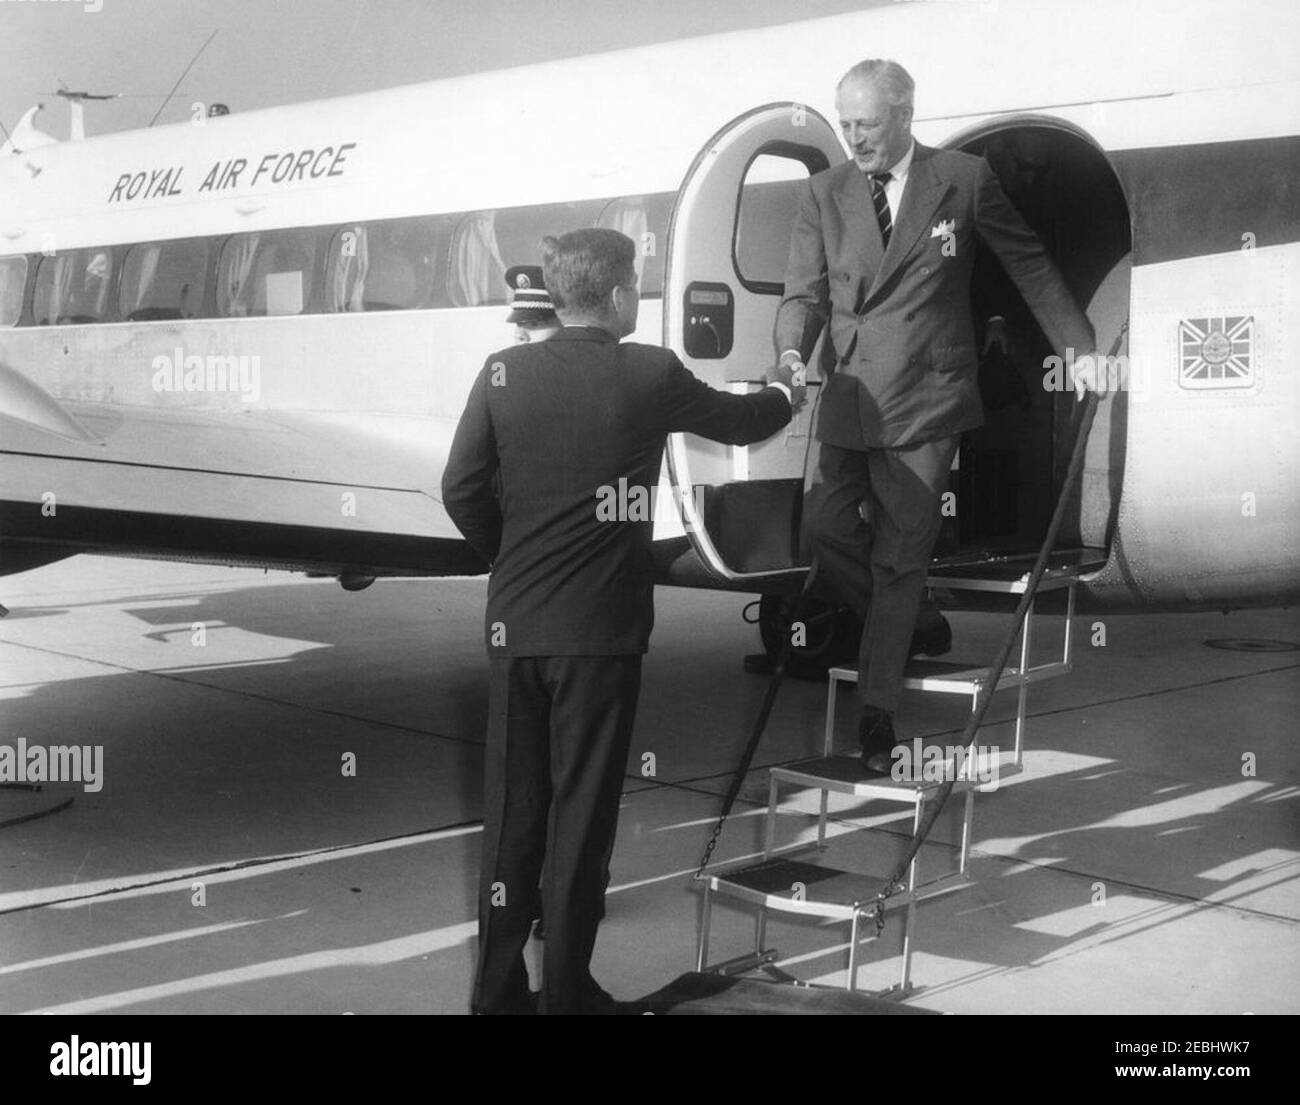 Ankunftszeremonie für Harold Macmillan, Premierminister von Großbritannien, 4:50pm Uhr. Präsident John F. Kennedy schüttelt die Hände mit Premierminister von Großbritannien, Harold Macmillan, nach der Ankunft des Premierministers Ministeru0027s auf der Andrews Air Force Base, Maryland, an Bord eines Flugzeugs der Royal Air Force. Stockfoto